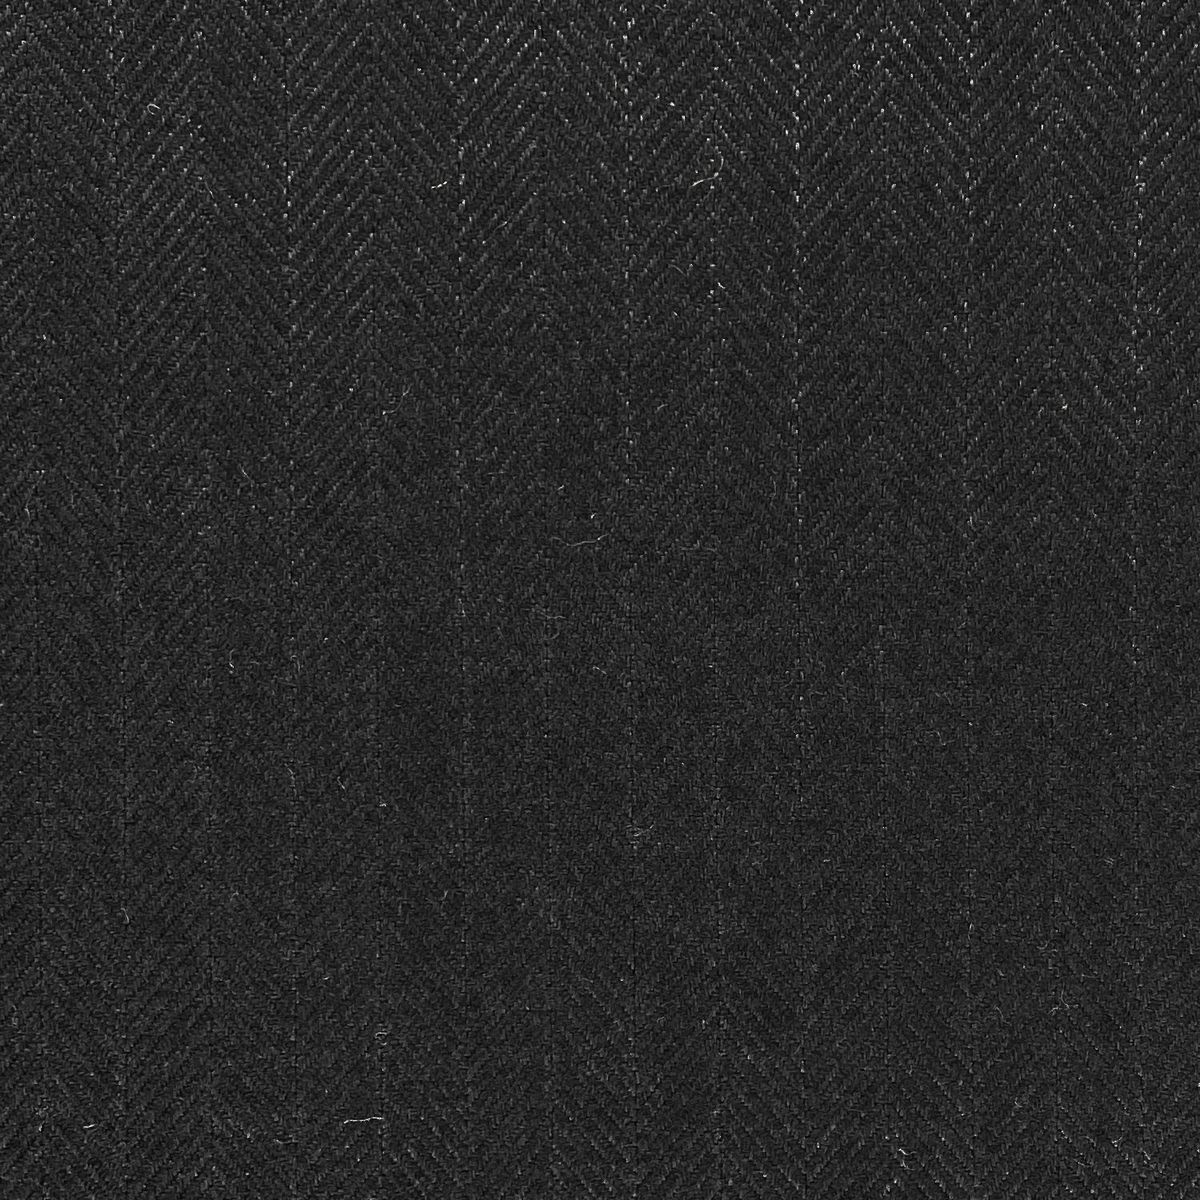 Tweed Black Fabric by Chatham Glyn